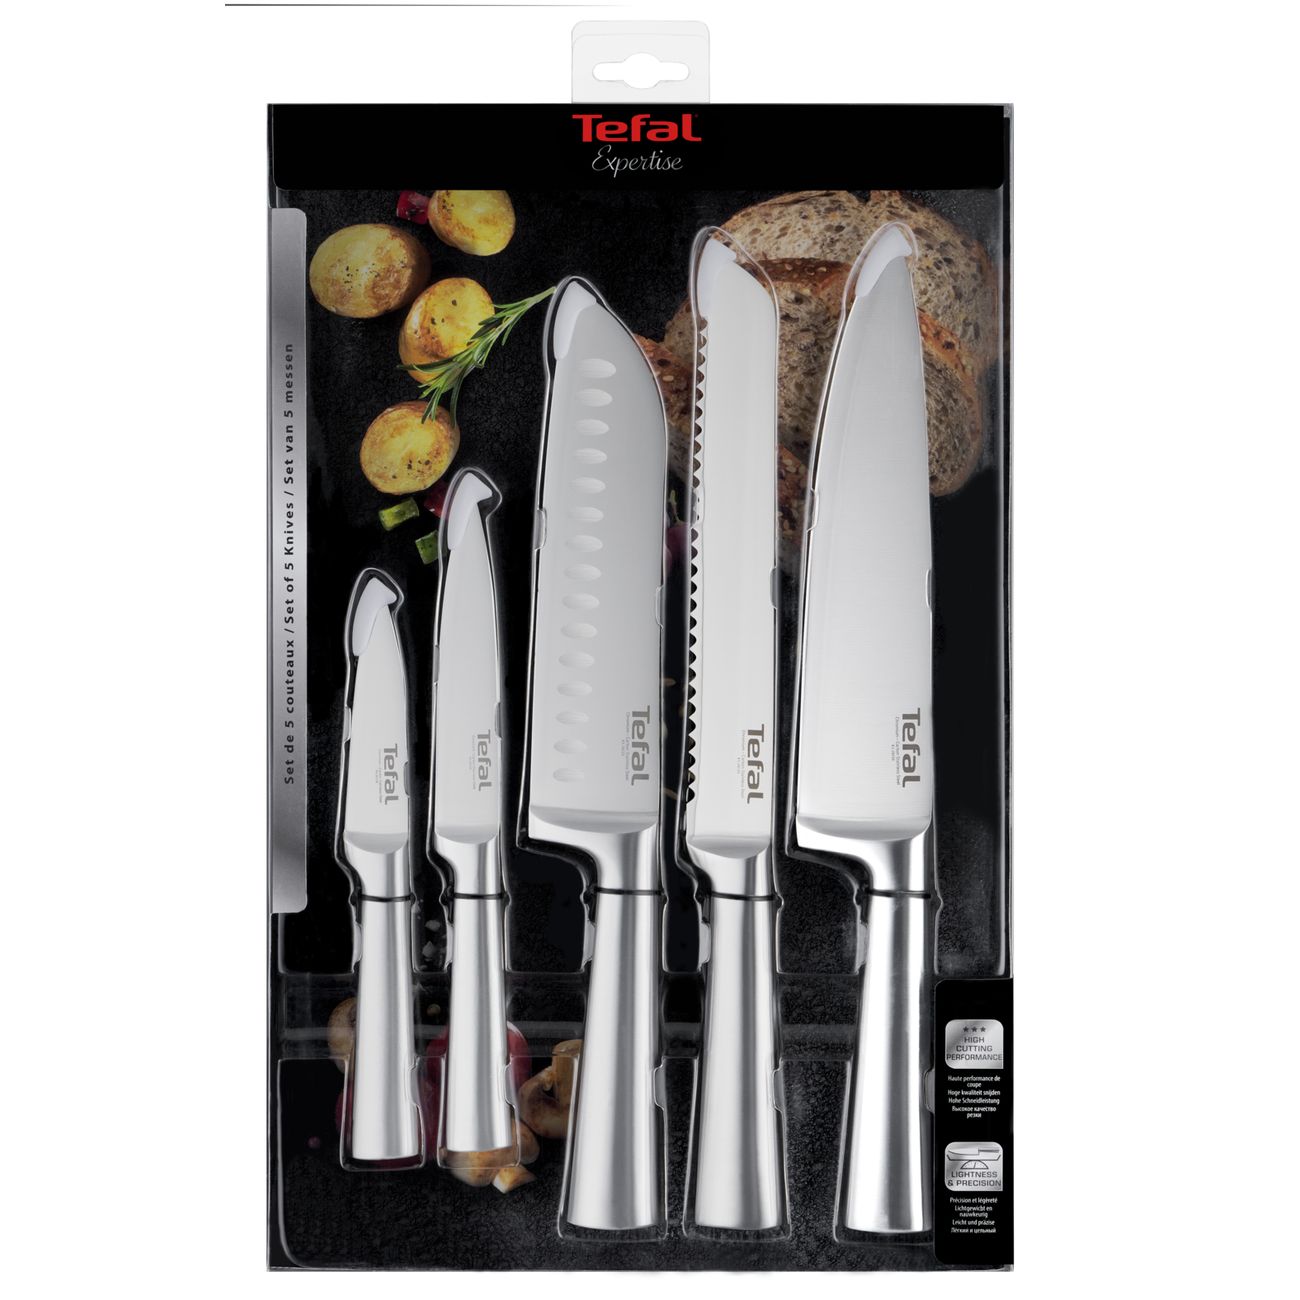 Набор кухонных ножей tefal. Набор кухонных ножей Tefal expertise (5 ножей) k121s575. Набор кухонных ножей Tefal expertise, 5 шт (k121s575). Набор Tefal k121s575. Tefal expertise 5 ножей.